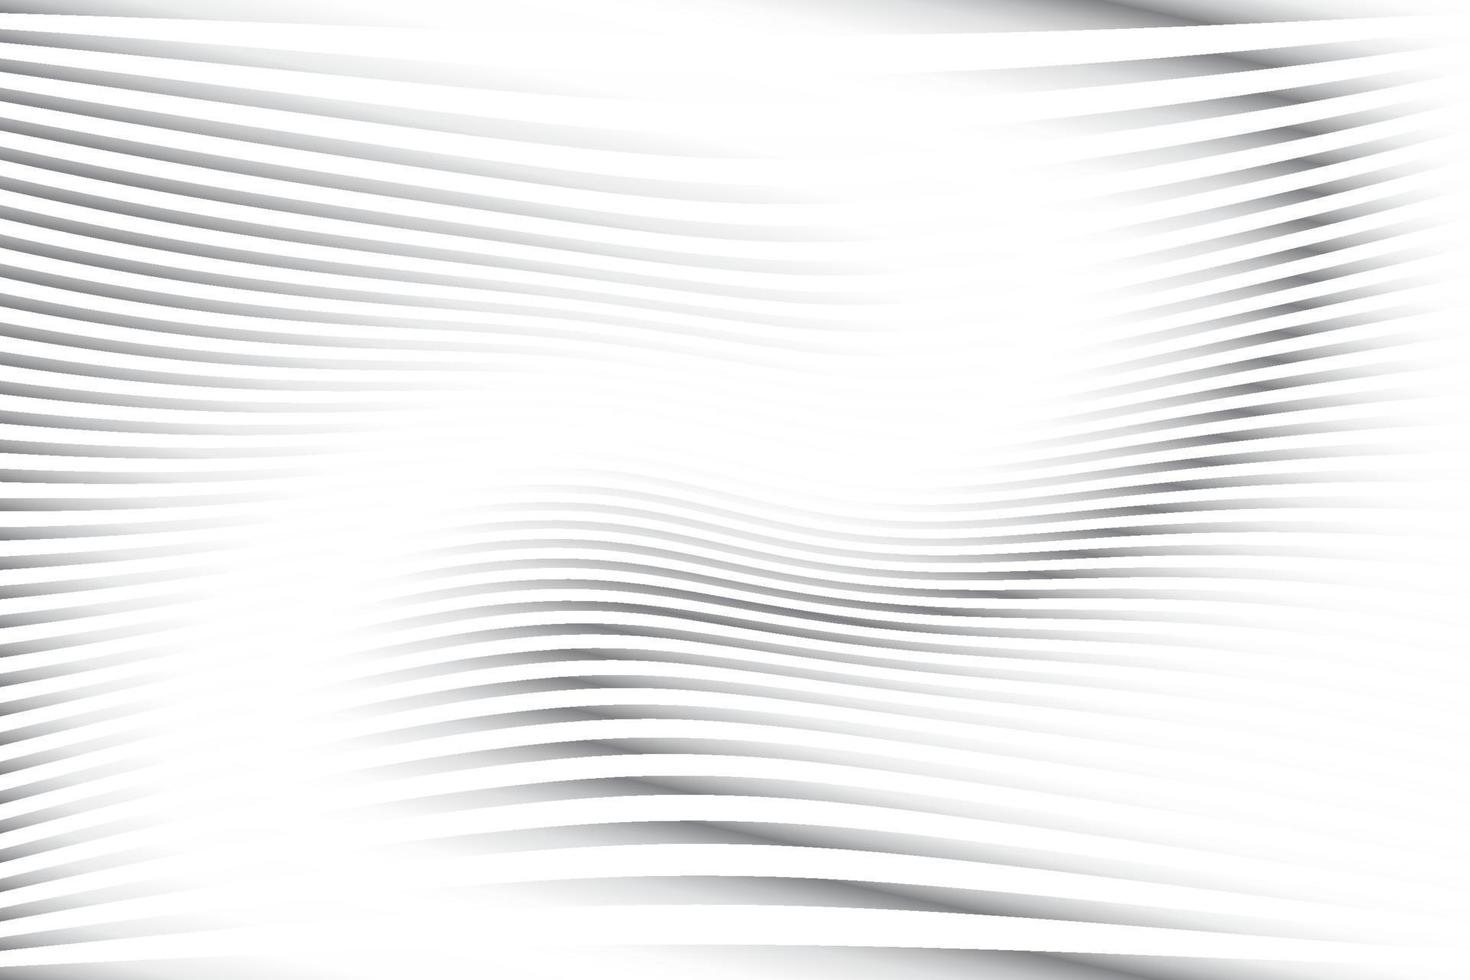 color blanco y gris abstracto, fondo de rayas de diseño moderno con forma redonda geométrica, patrón de onda. ilustración vectorial vector